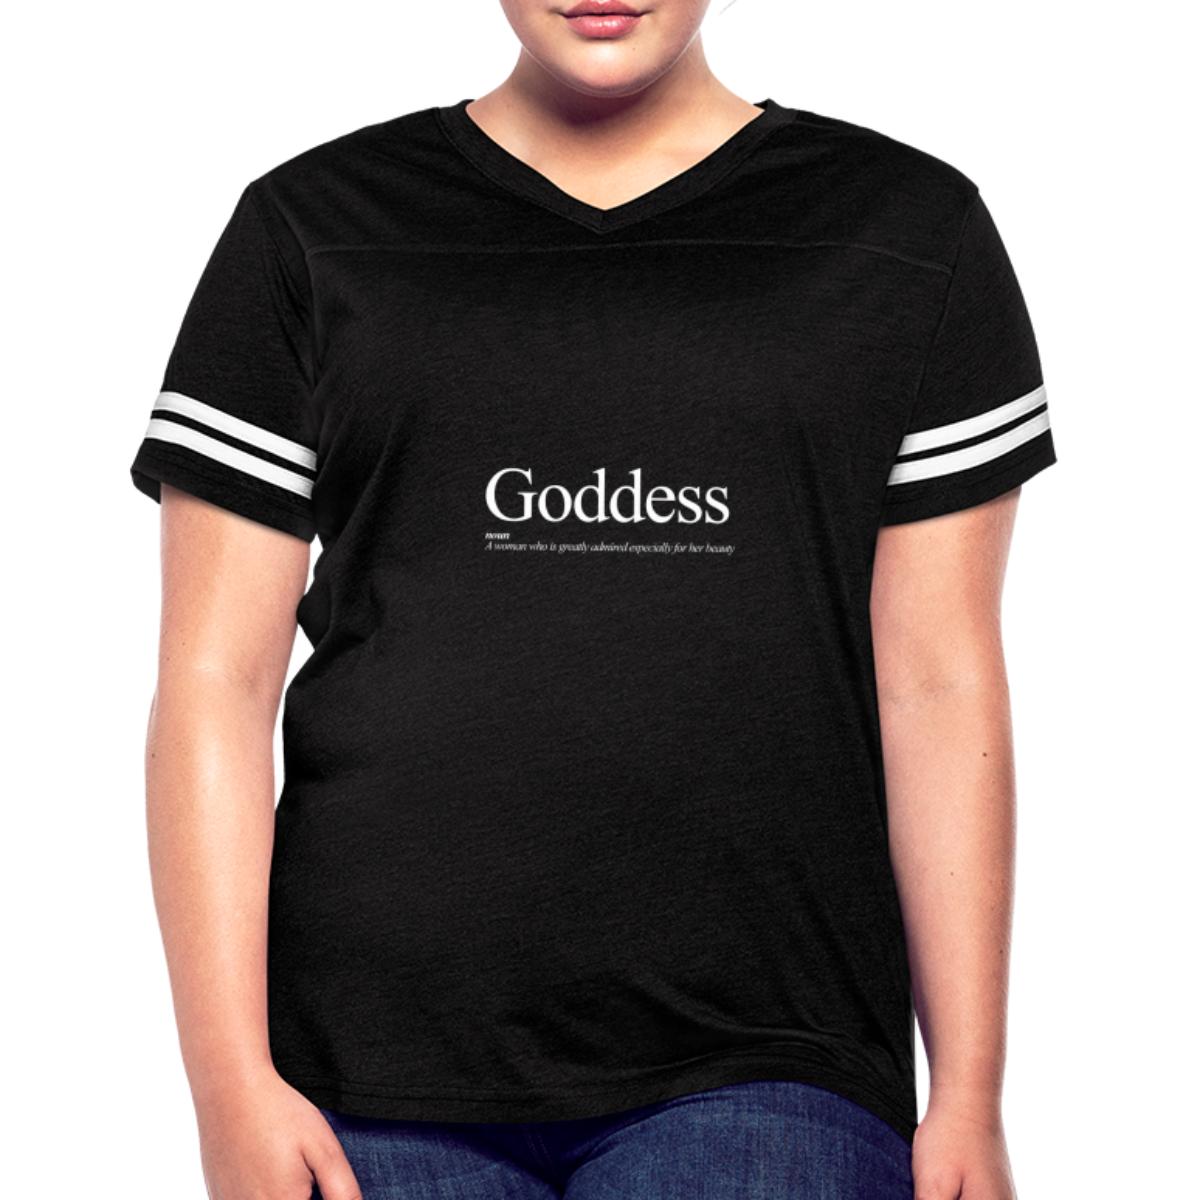 Goddess Women's Vintage Sport T-Shirt - Walmart.com